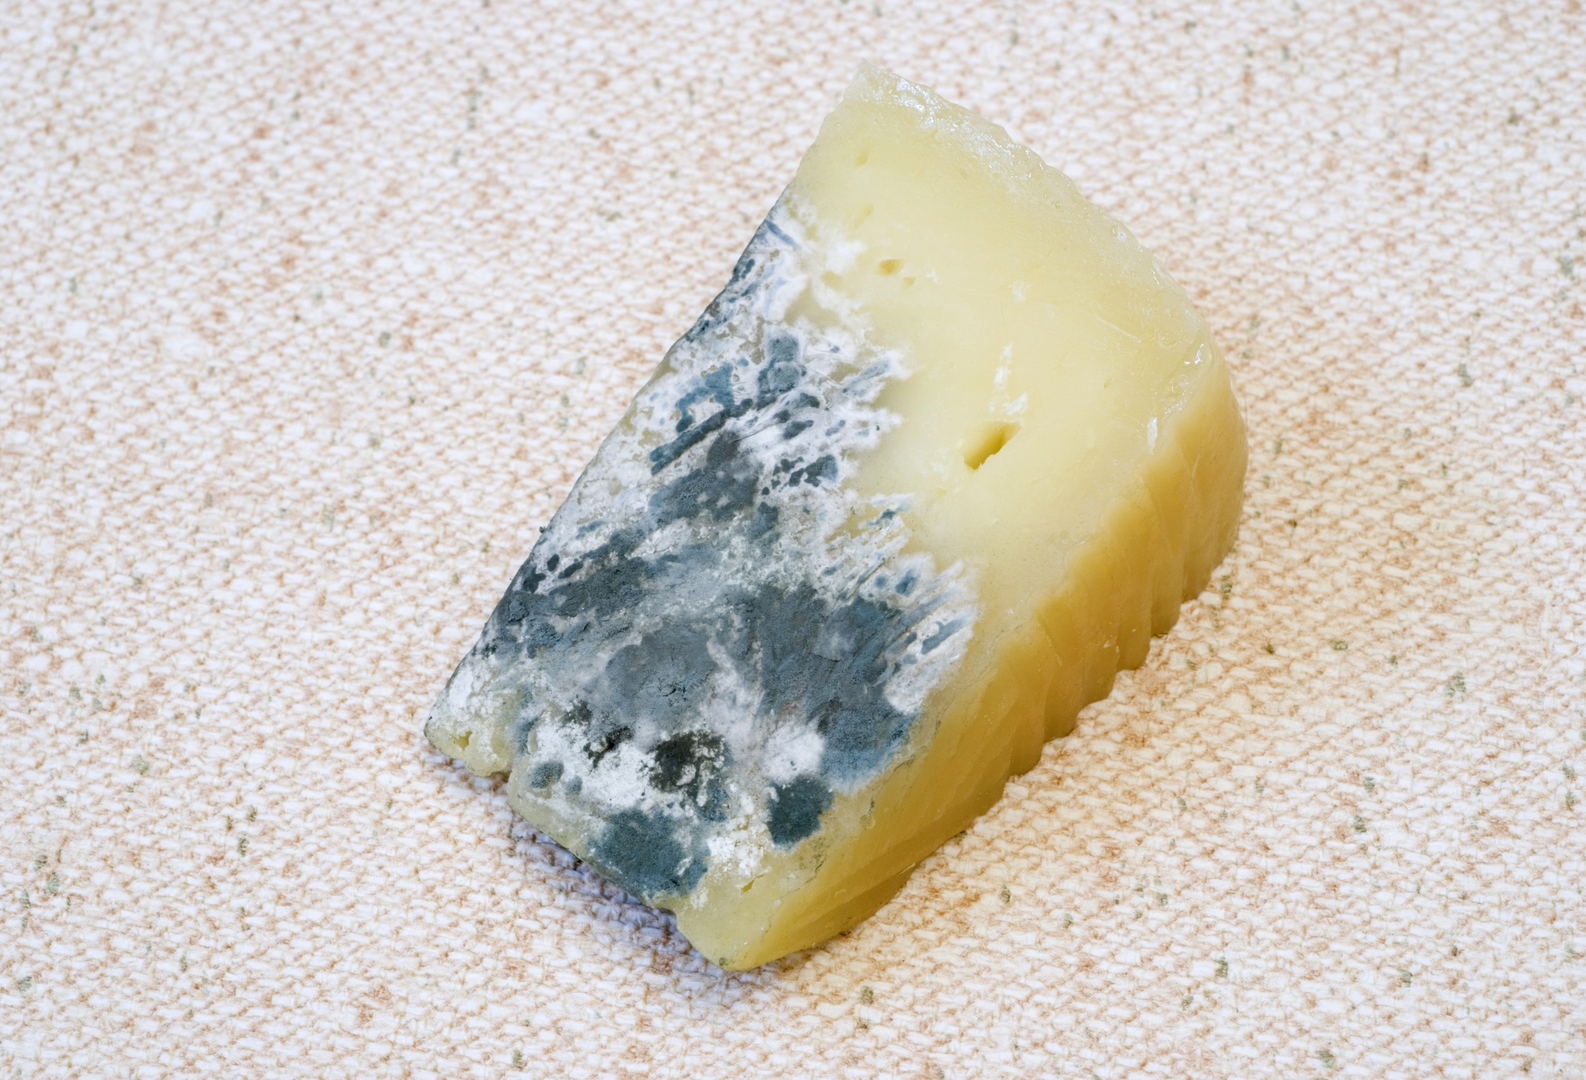 هل من الآمن تناول الجبن بعد تعفنه؟